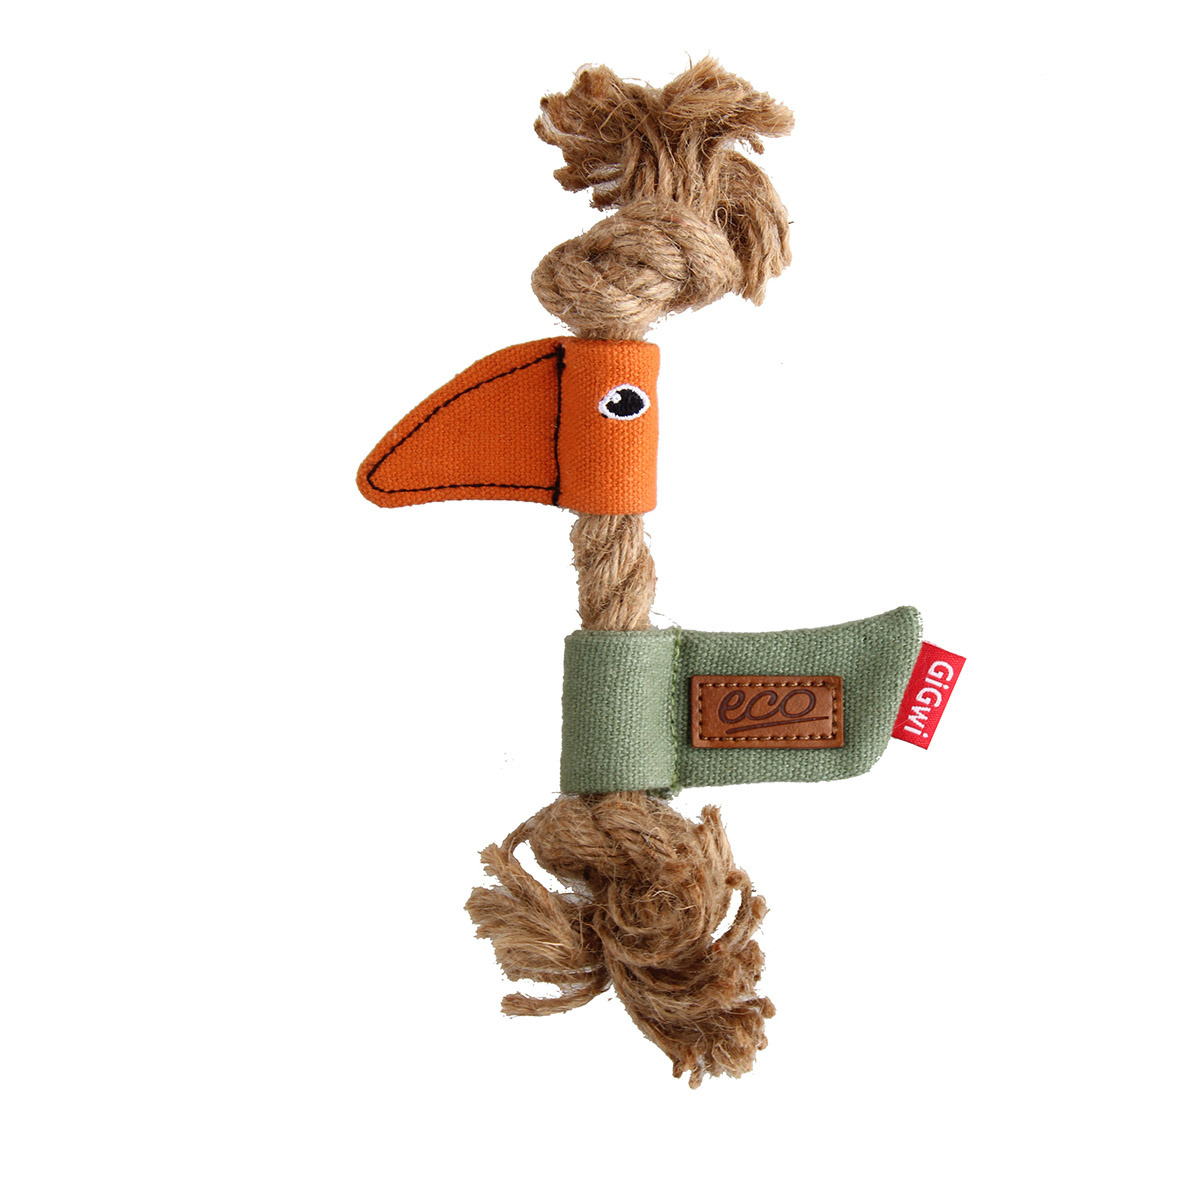 GiGwi GiGwi игрушка Птичка (30 г) gigwi gigwi игрушка резиновая цепь каучук лён 213 г